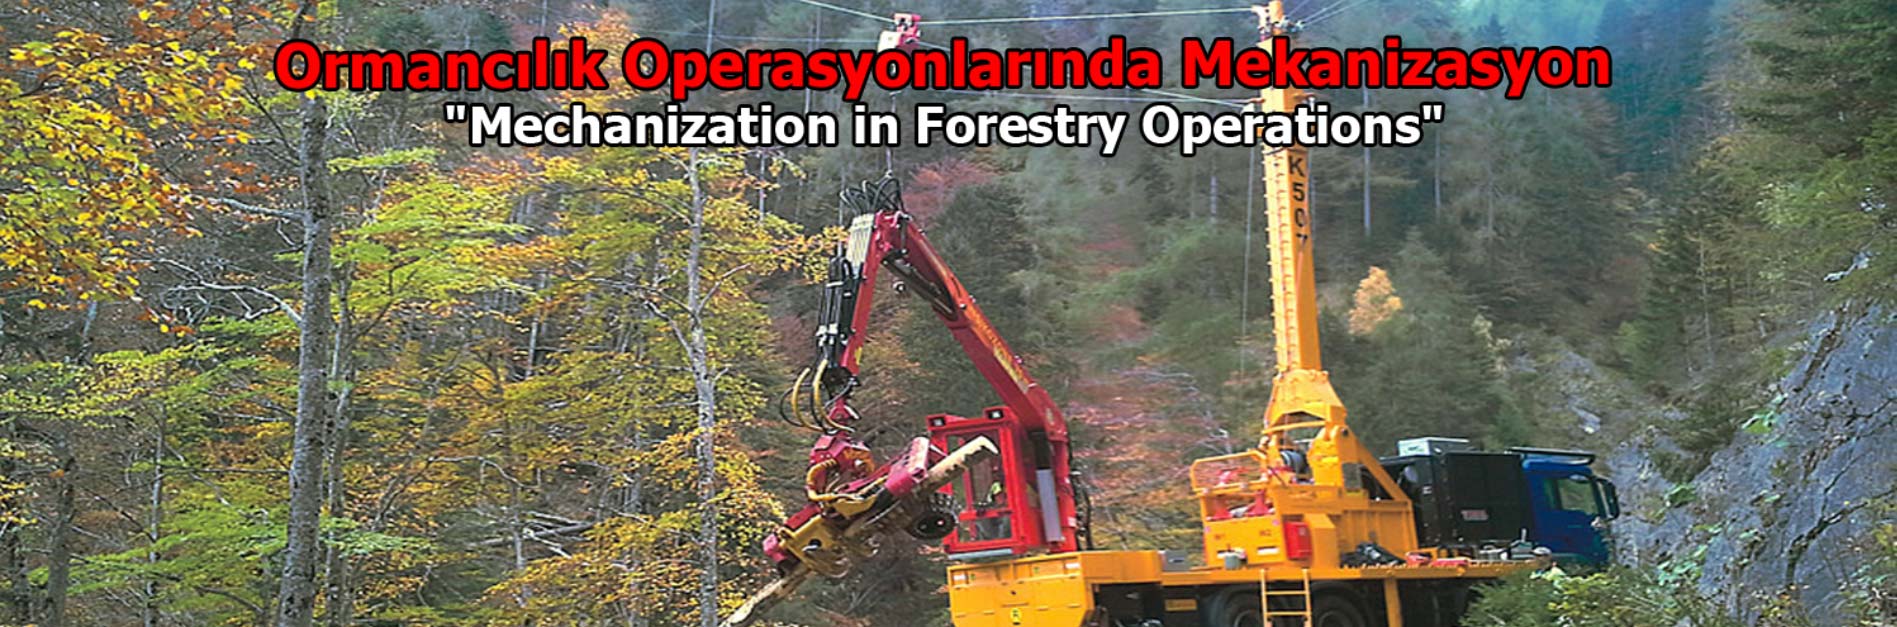 Ormancılık Operasyonlarında Mekanizasyon